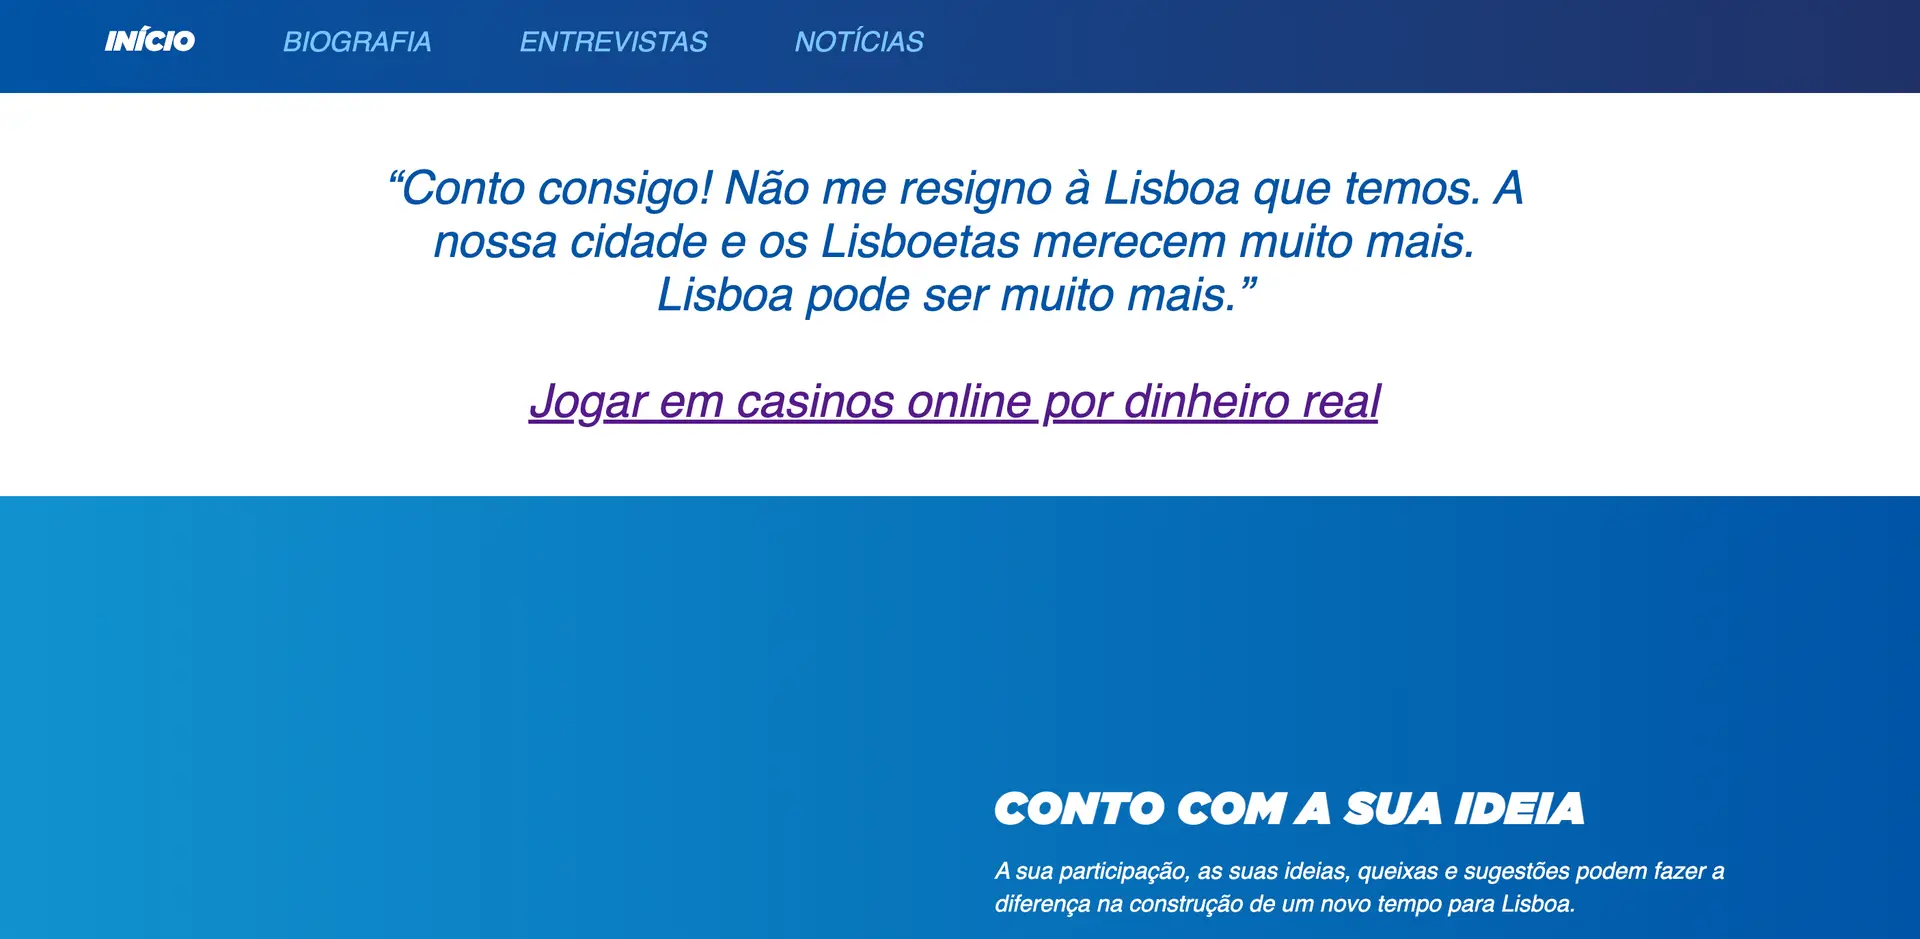 O website que Carlos Moedas usou para fazer campanha está agora a ser utilizado para promover o jogo em casinos online